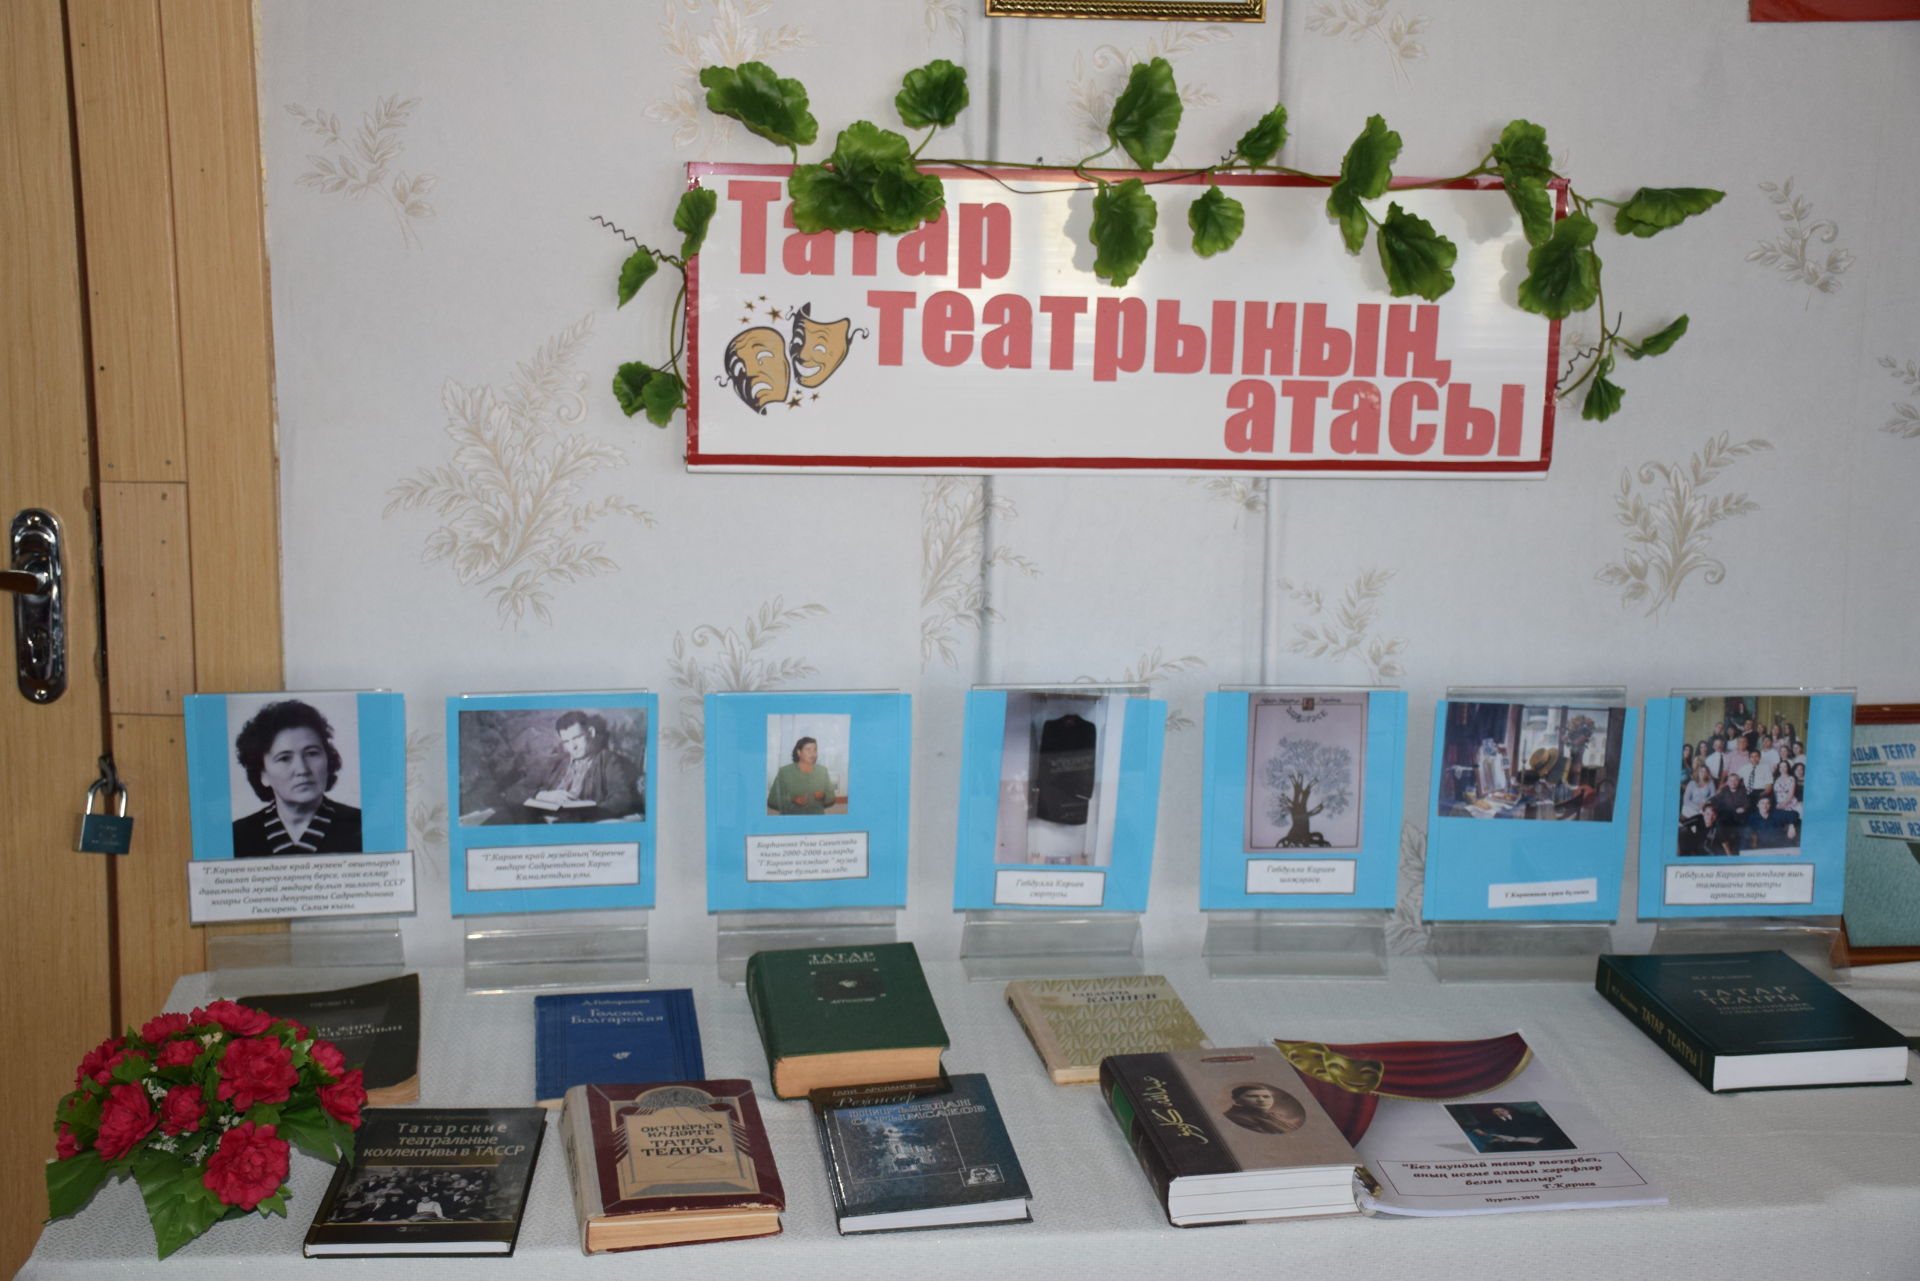 На родине Габдуллы Кариева прошли памятные мероприятия по случаю его 135-летия